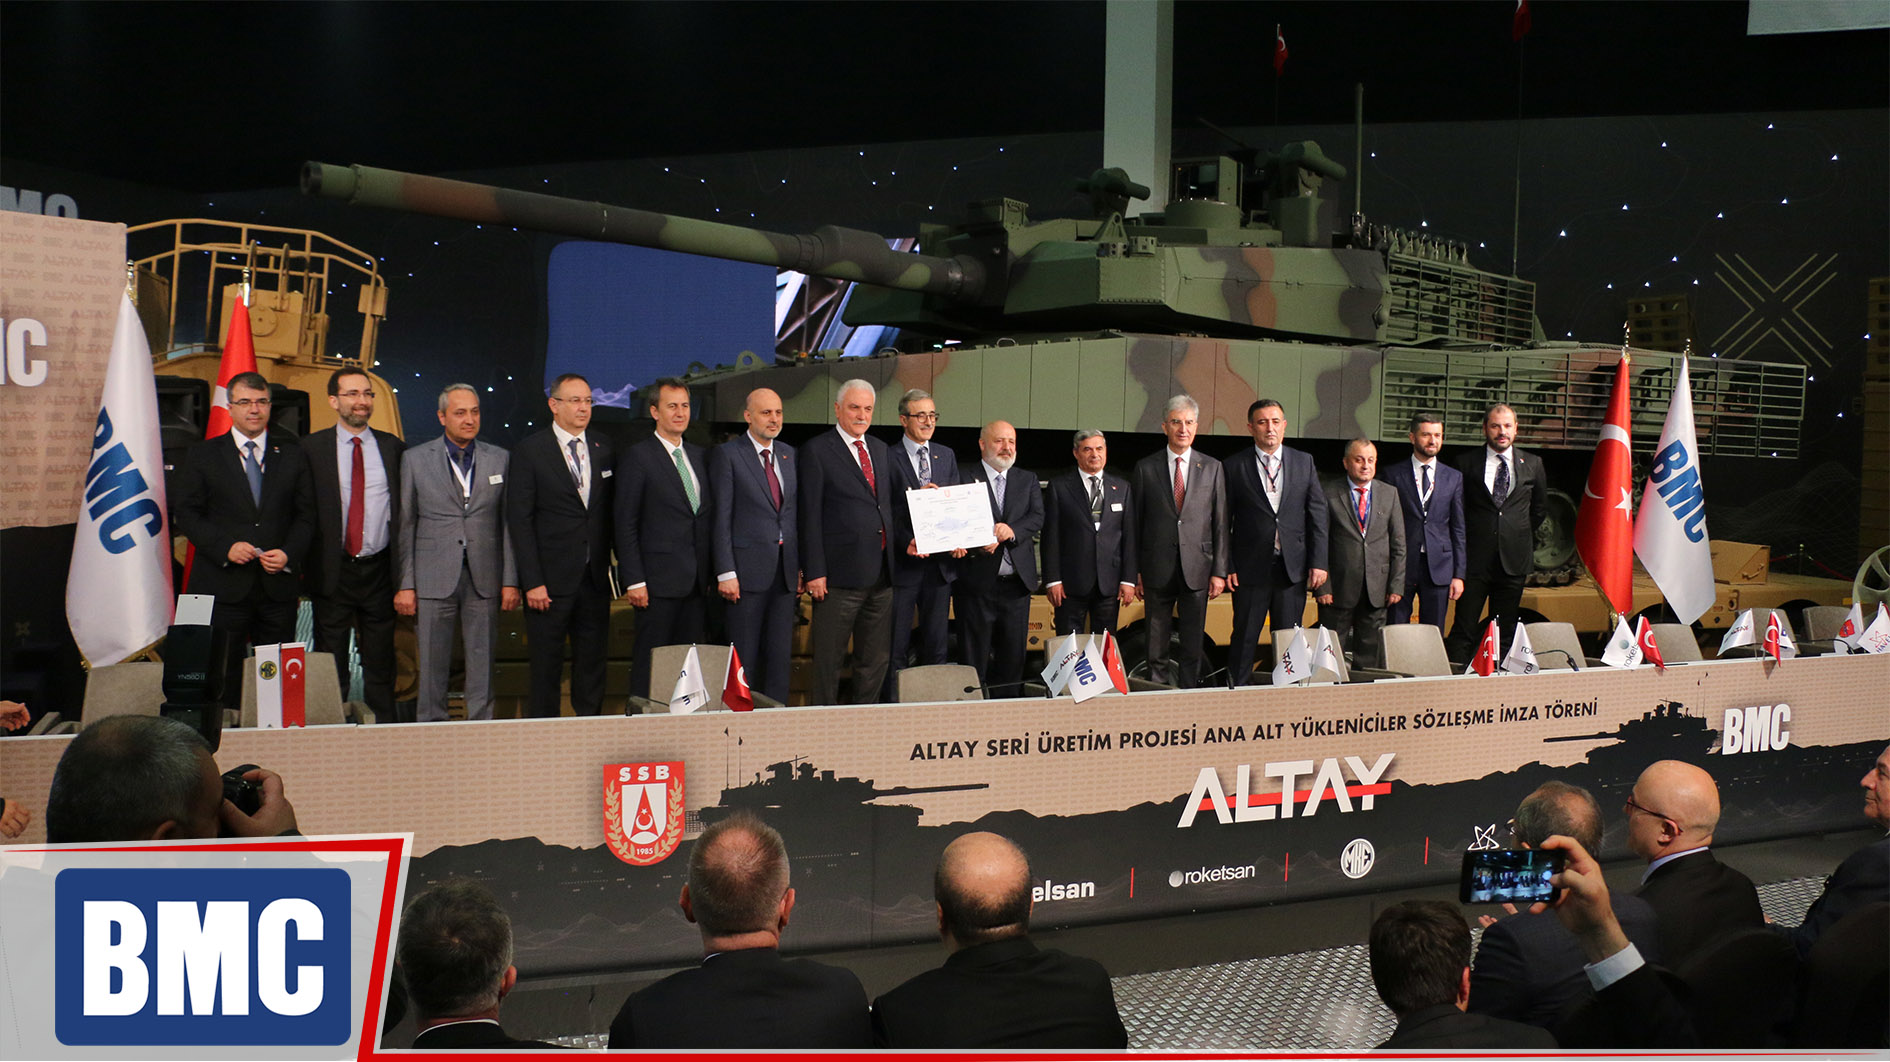 Altay seri üretim projesi ana alt yükleniciler sözleşmesi imzalandı